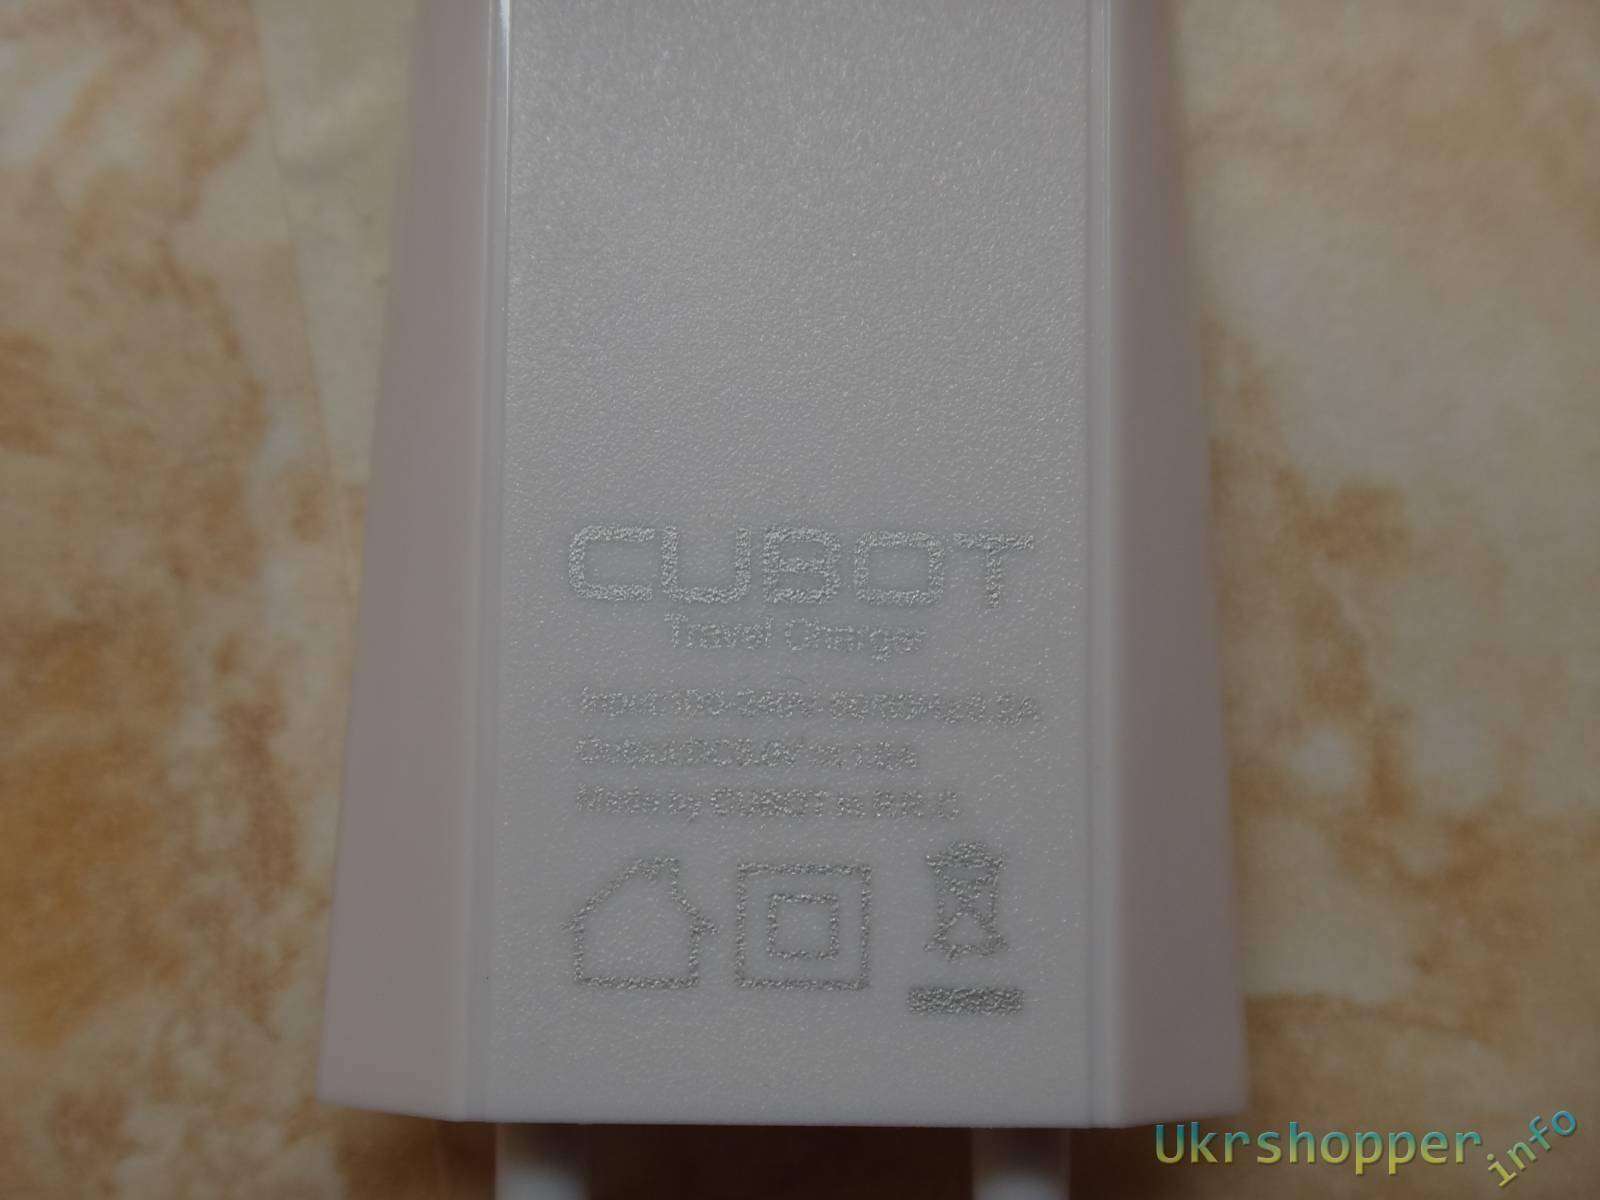 GearBest: Смартфон Cubot S200 самый полный обзор или стильный долгожитель